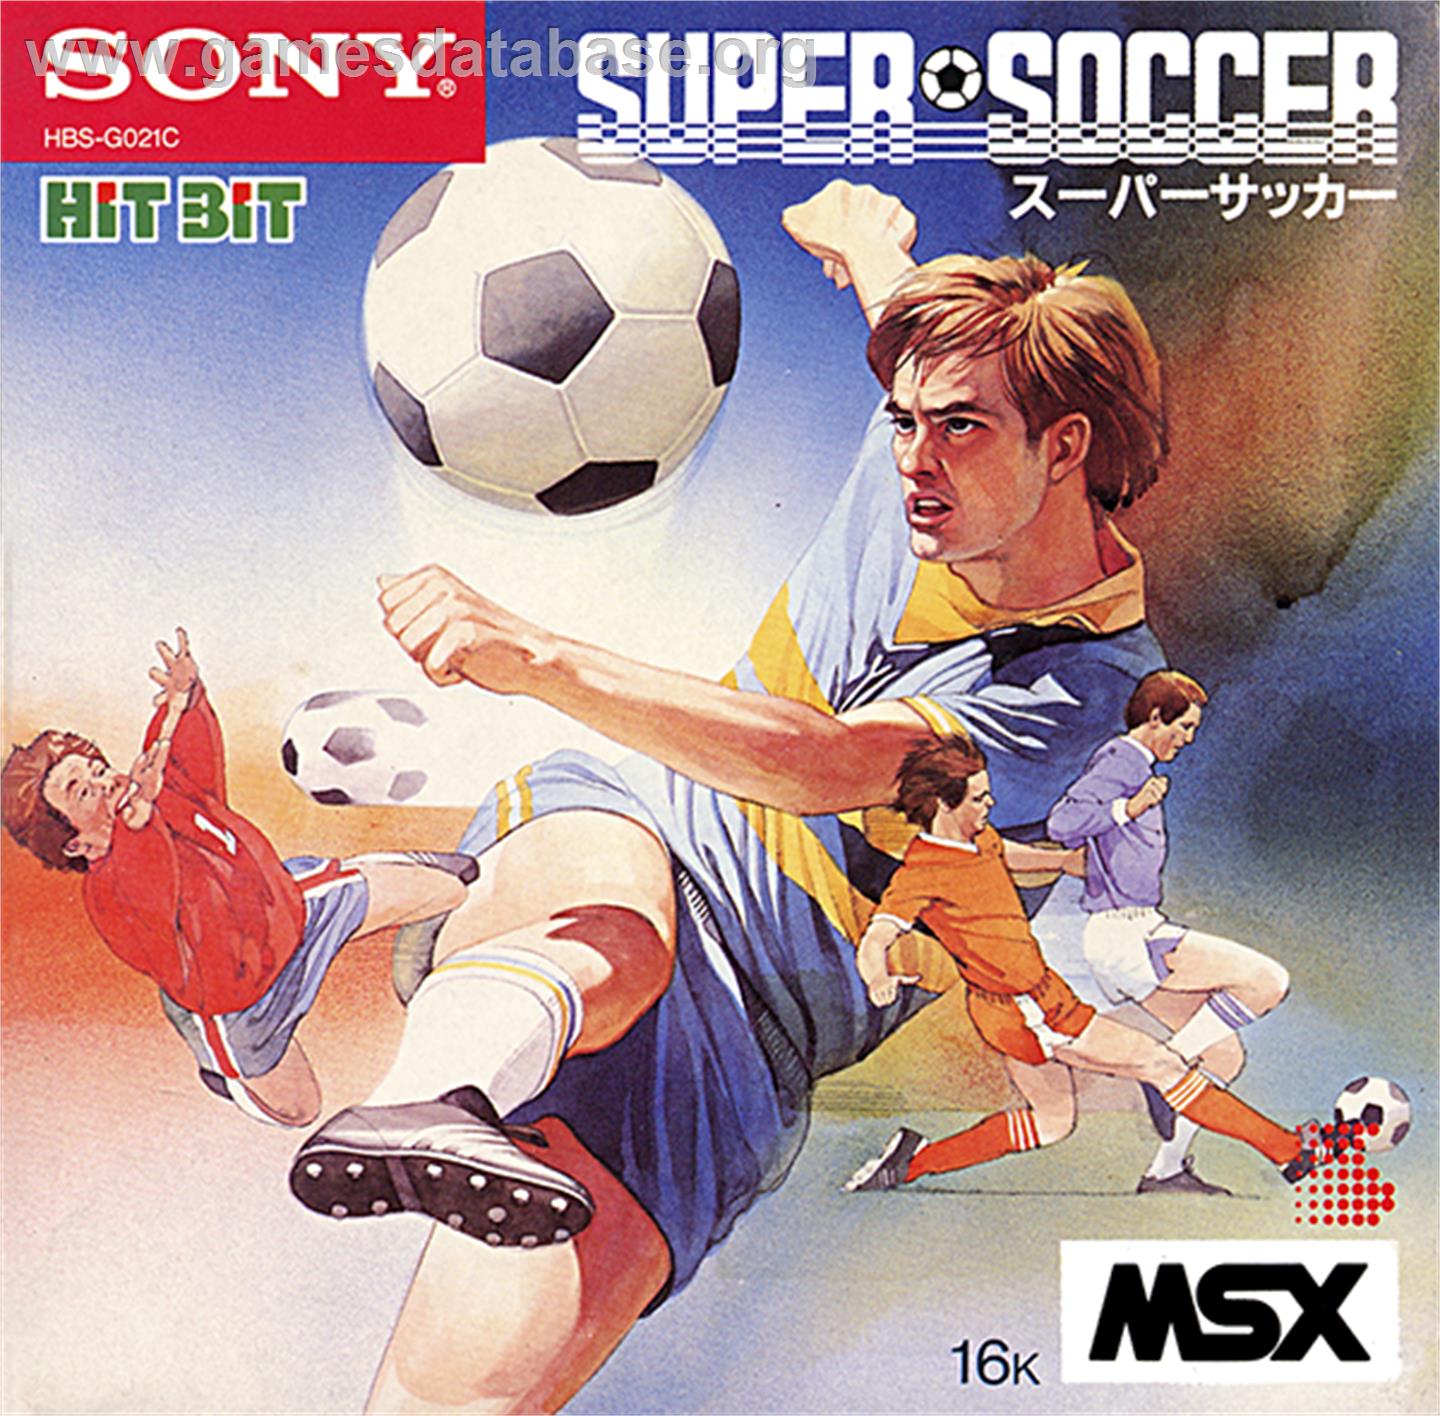 Super Soccer - MSX - Artwork - Box